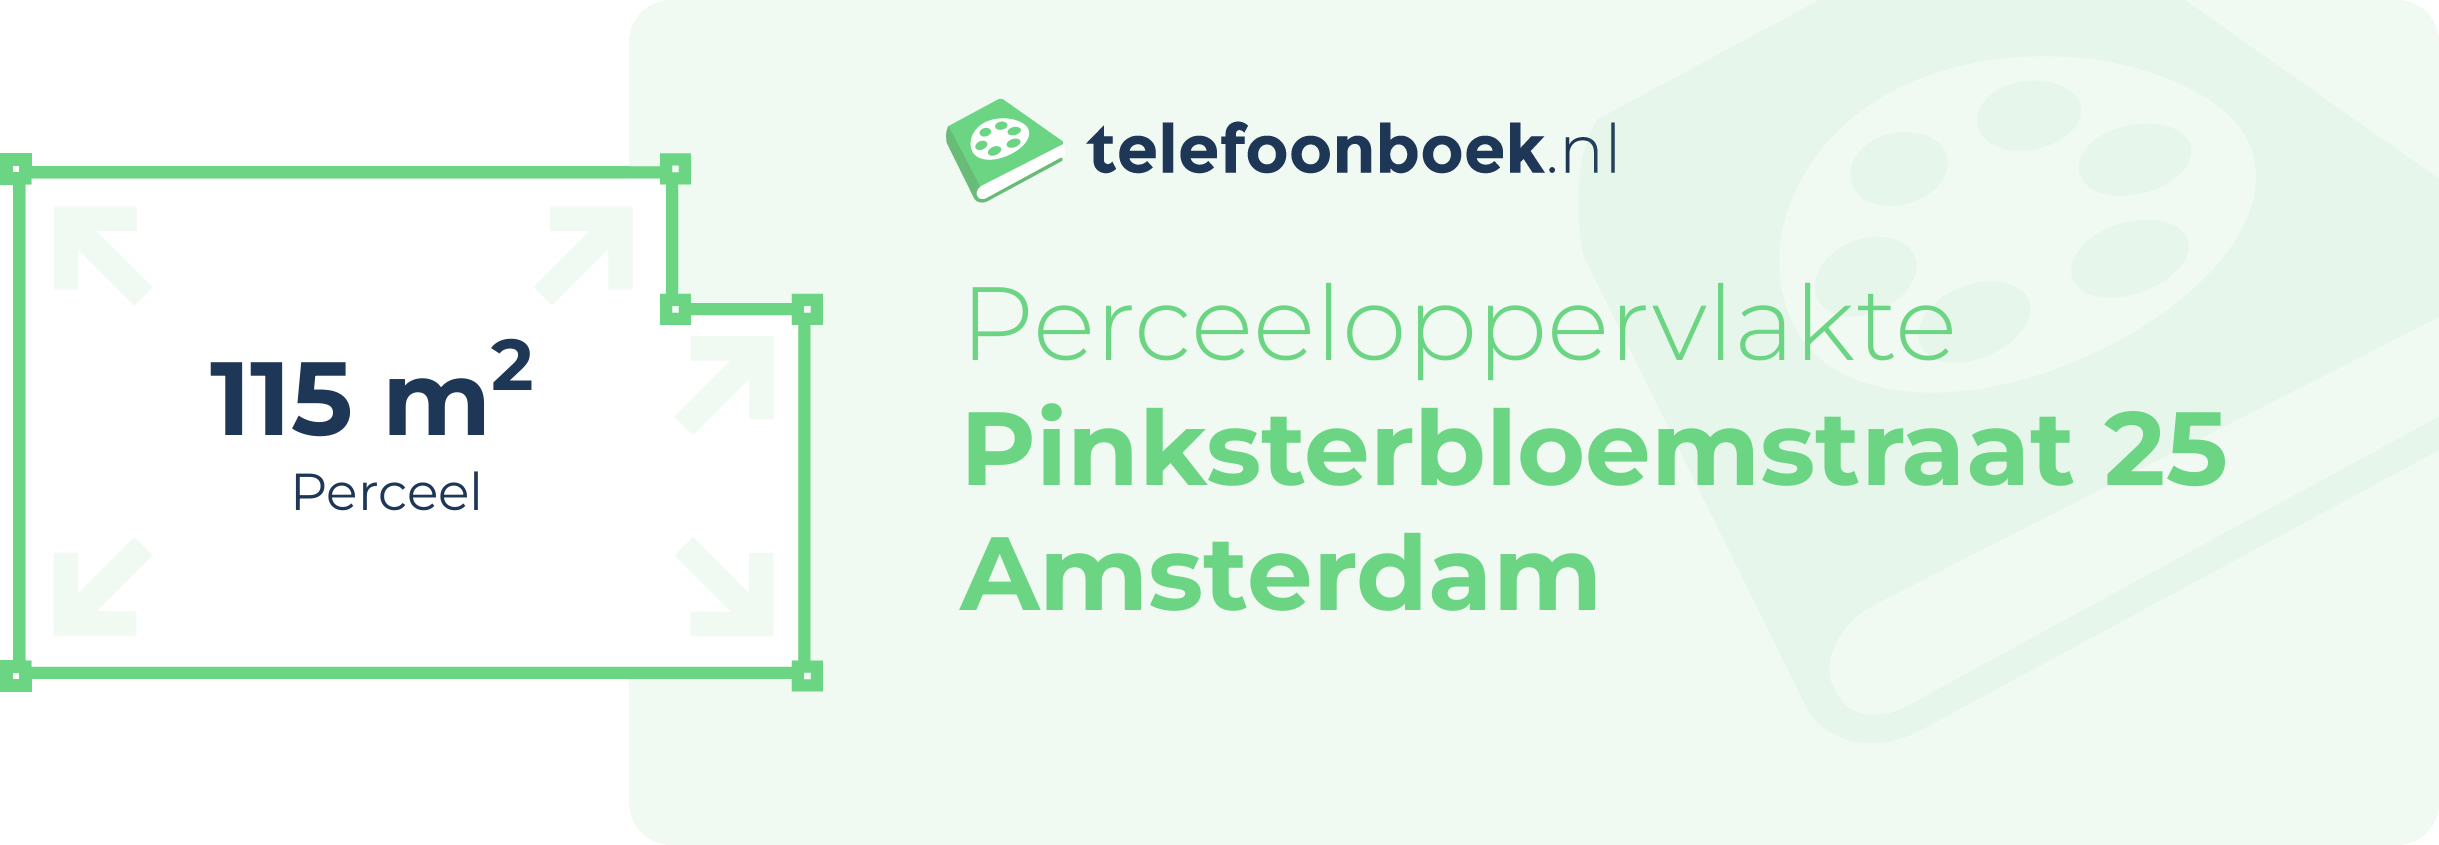 Perceeloppervlakte Pinksterbloemstraat 25 Amsterdam